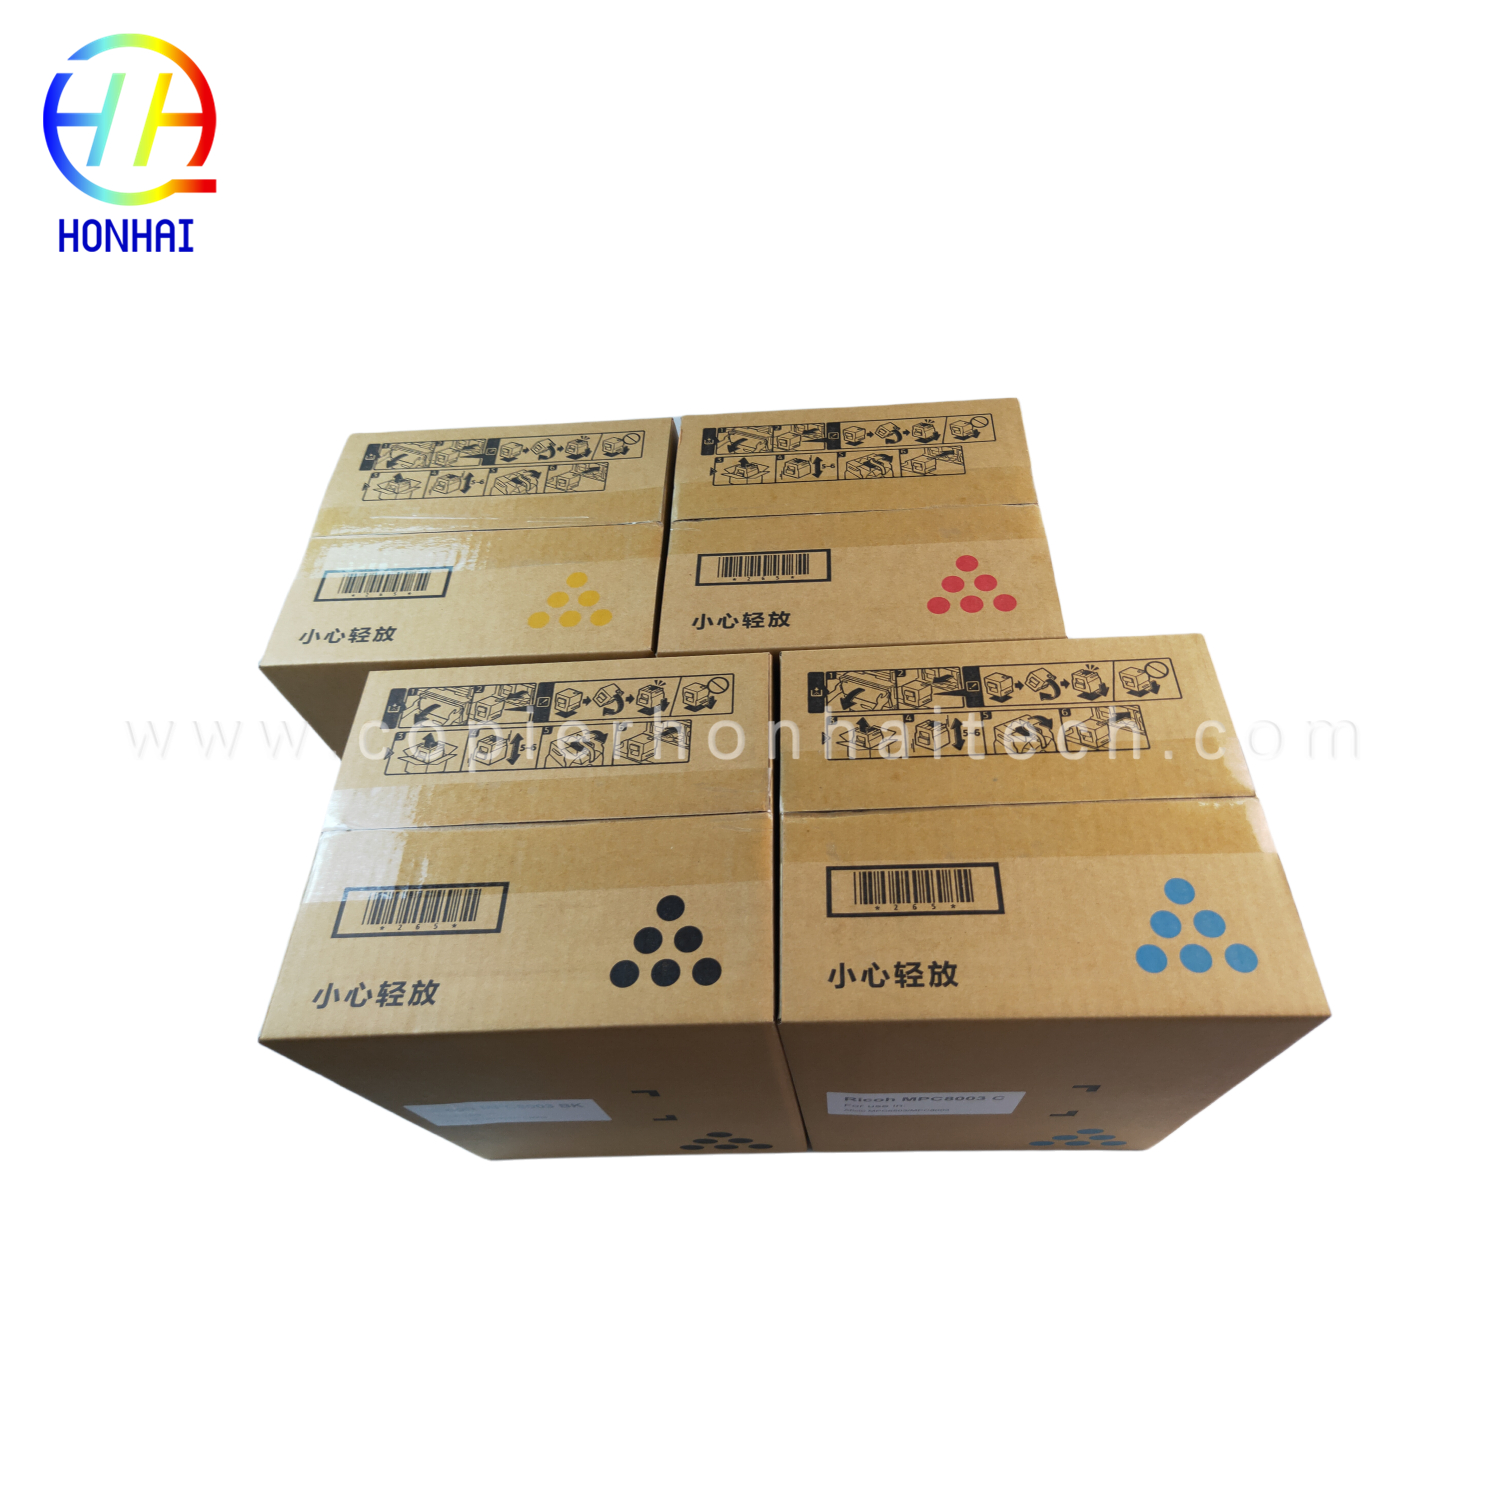 https://www.copierhonhaitech.com/toner-cartridge-japan-powder-for-ricoh-ref-842346-mp9002-mp6002-mp6002sp-mp6503-mp7502-mp7502sp-mp7503-mp9002sp-mp-product/900